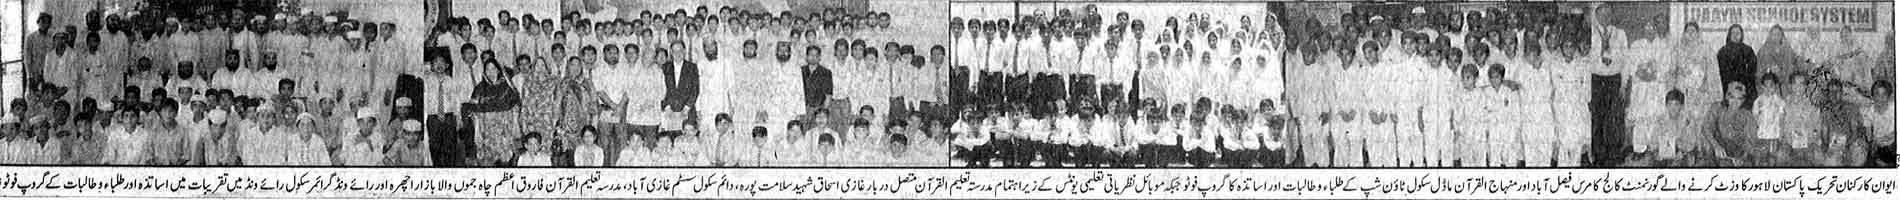 Minhaj-ul-Quran  Print Media Coverage Daily Waqt Page: 7